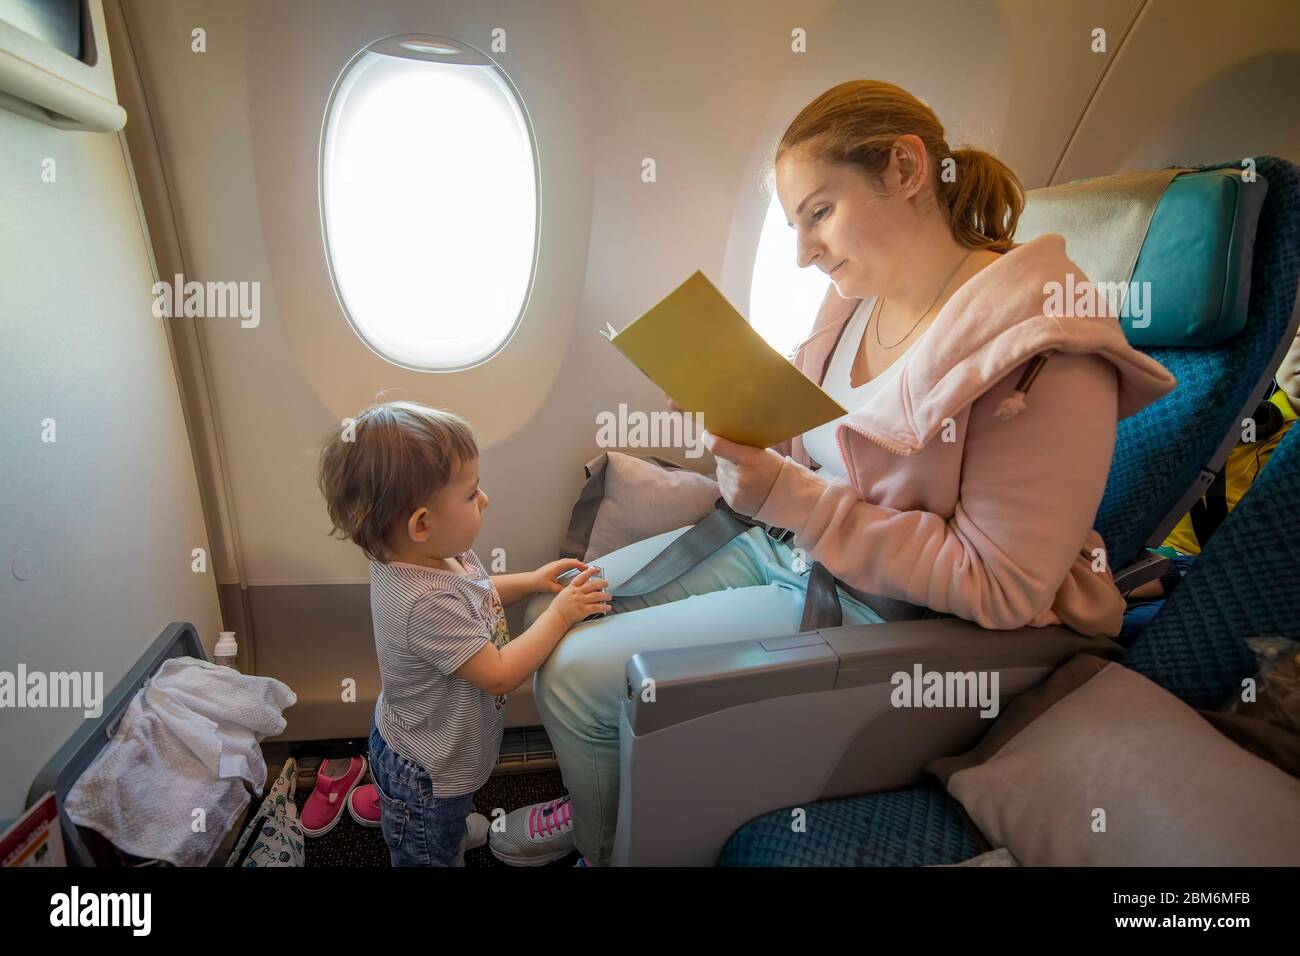 Junge schöne Mutter sitzt in einem Flugzeug Stuhl und liest ein Buch. Ihr kleines süßes Kleinkind steht vor ihr. Nahaufnahme, weiche Fokus, Draufsicht Stockfoto